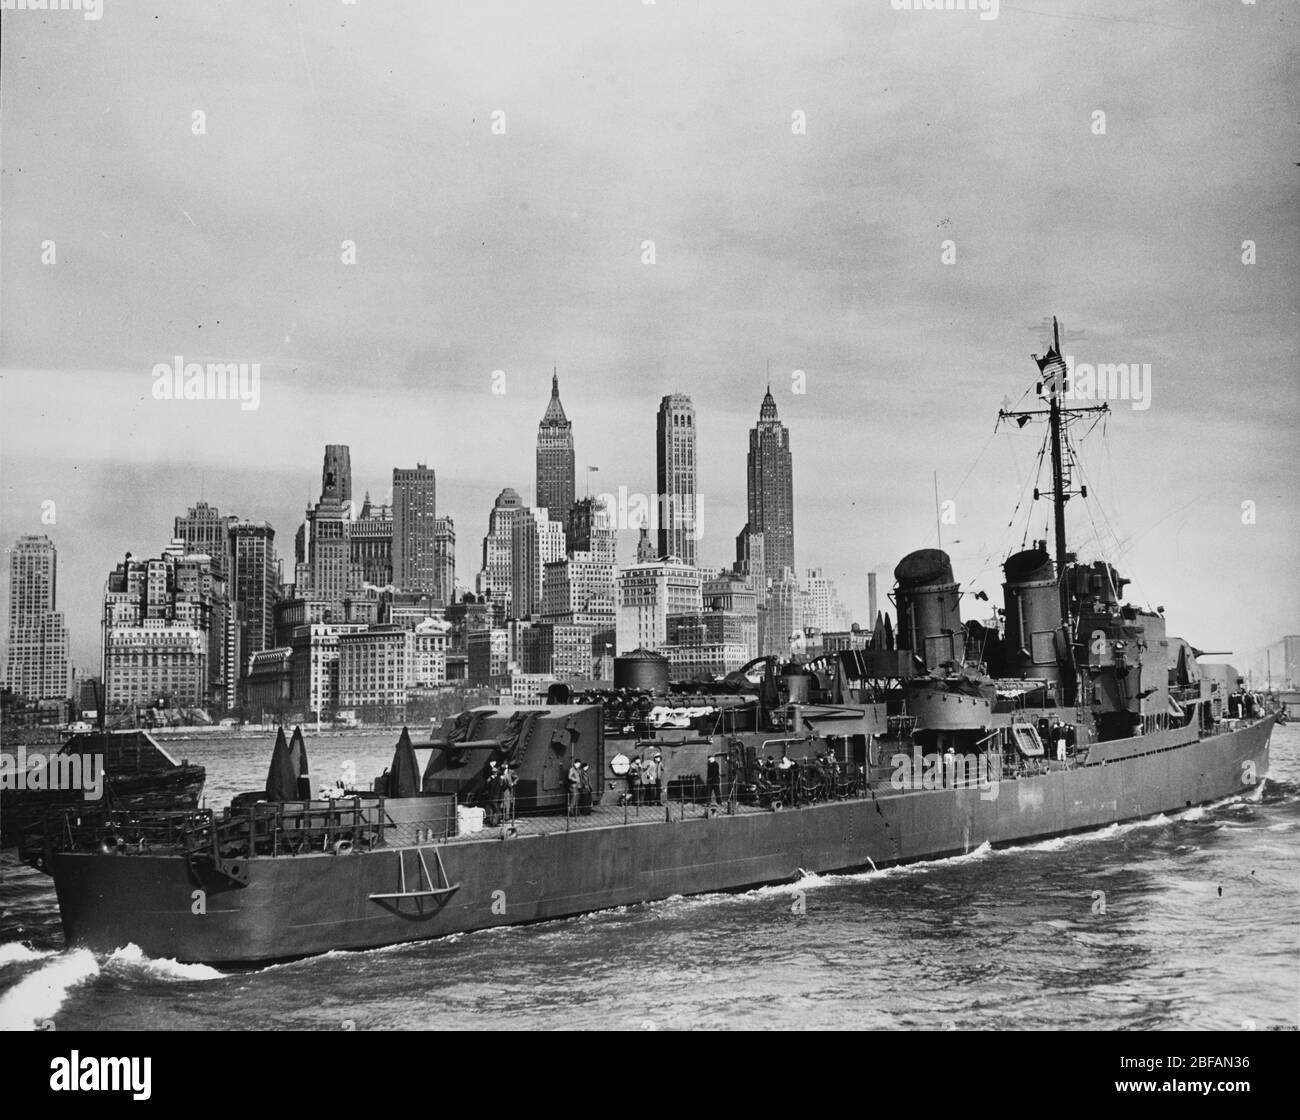 USS Harlan R. Dickson (DD-708) off sull'isola di Manhattan, New York, en route da lei costruttori, cantieristica navale federale & Dry Dock Company, Kearny, New Jersey, per la consegna alla marina militare nel febbraio 1945 Foto Stock